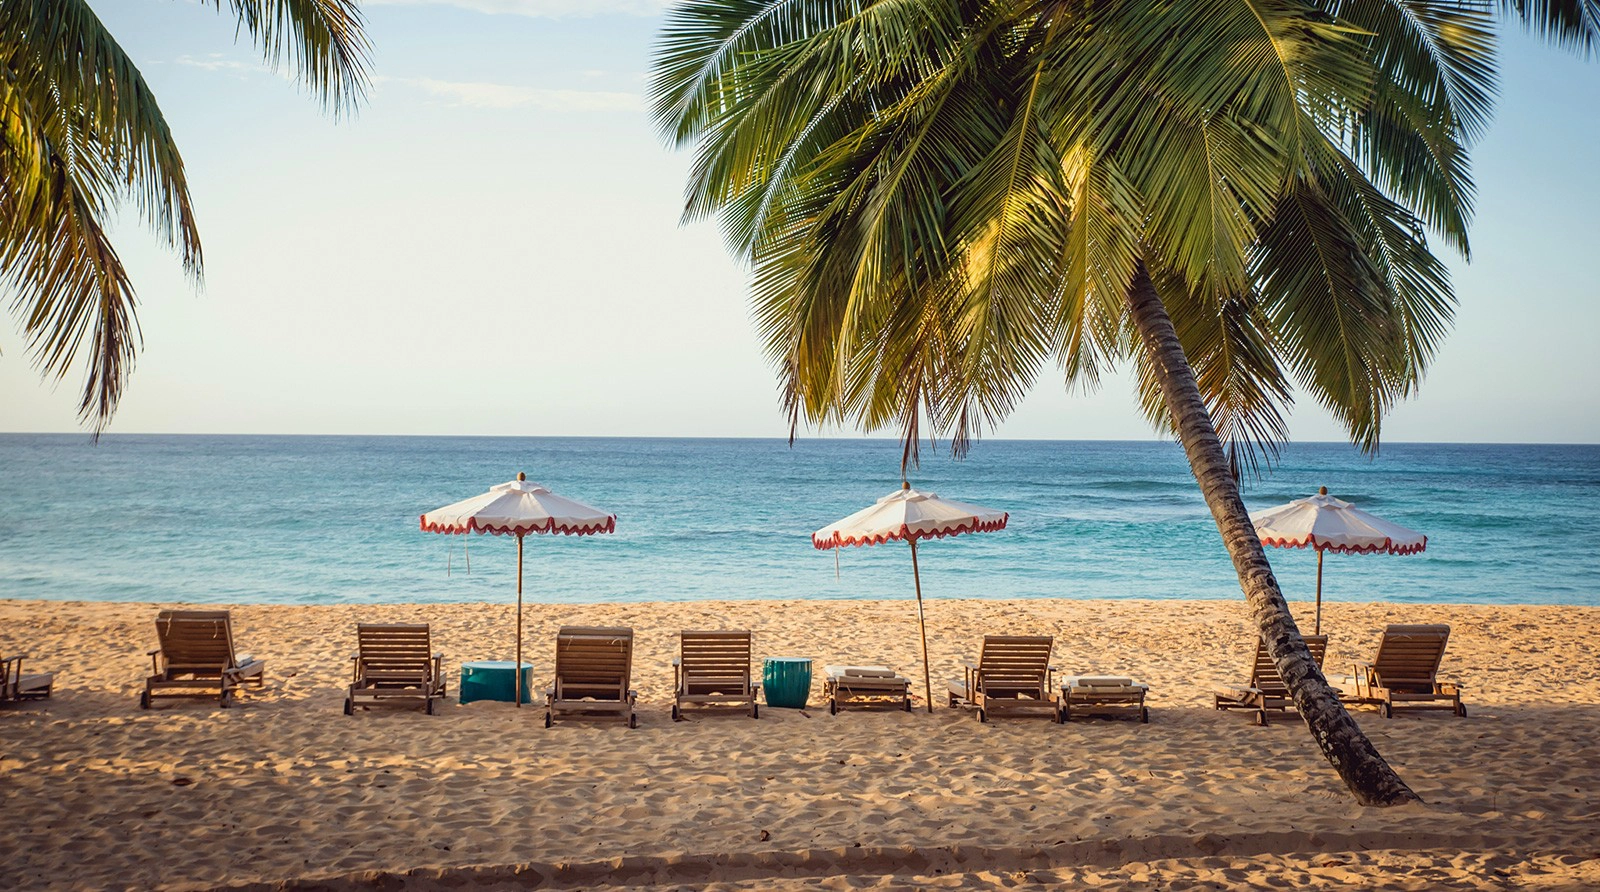  Playa Grande  strand - Dominikai Köztársaság